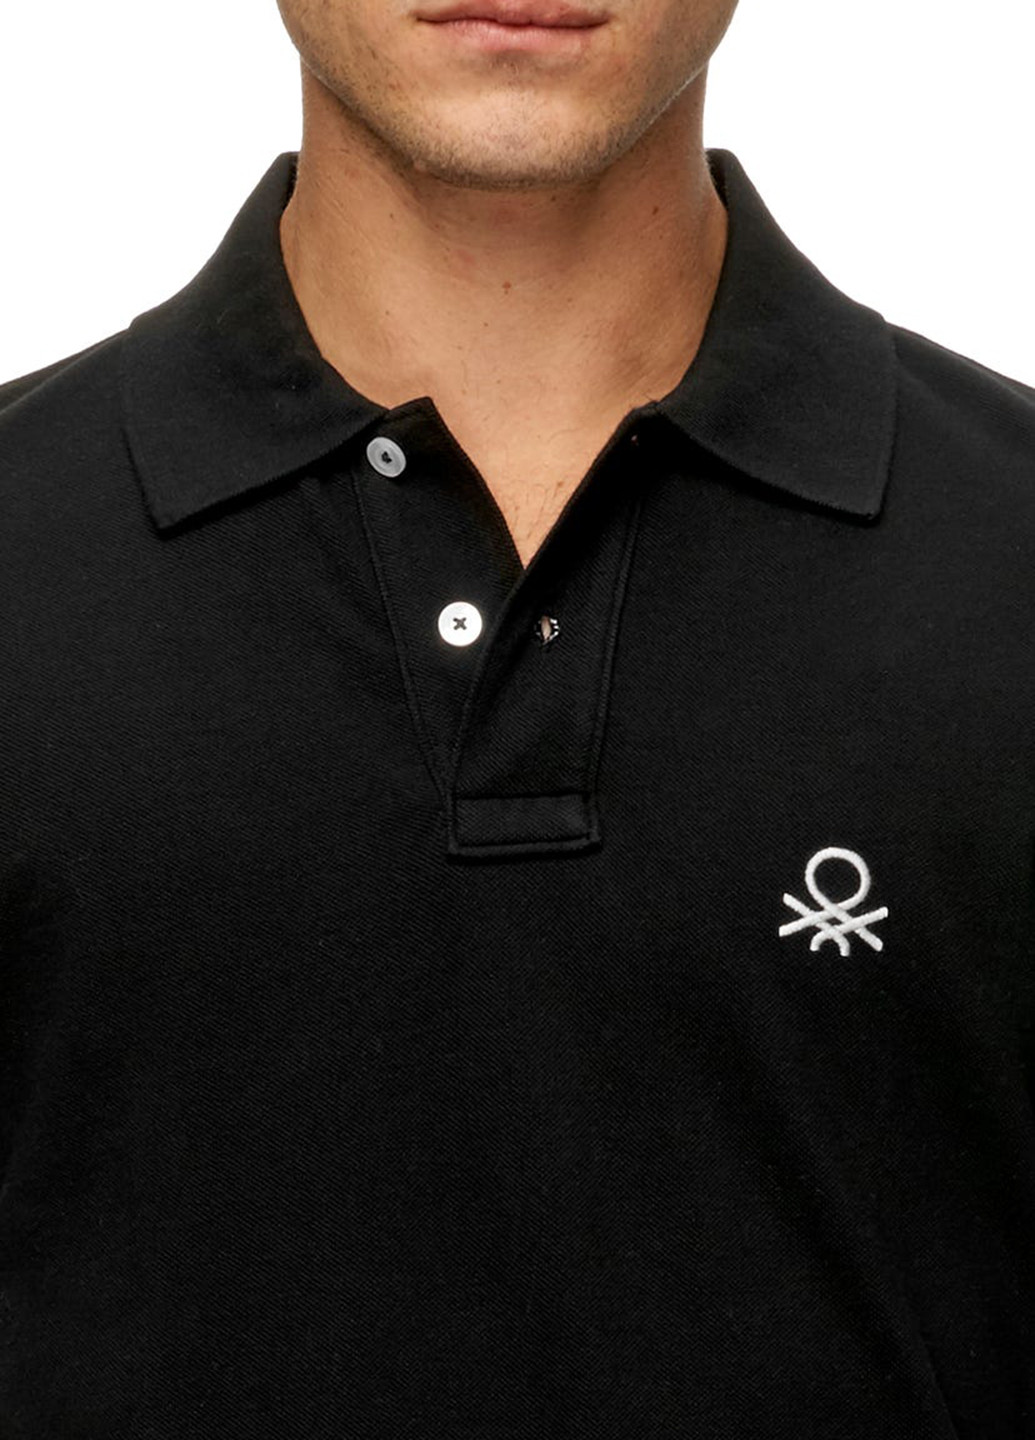 Черная футболка-поло для мужчин United Colors of Benetton однотонная